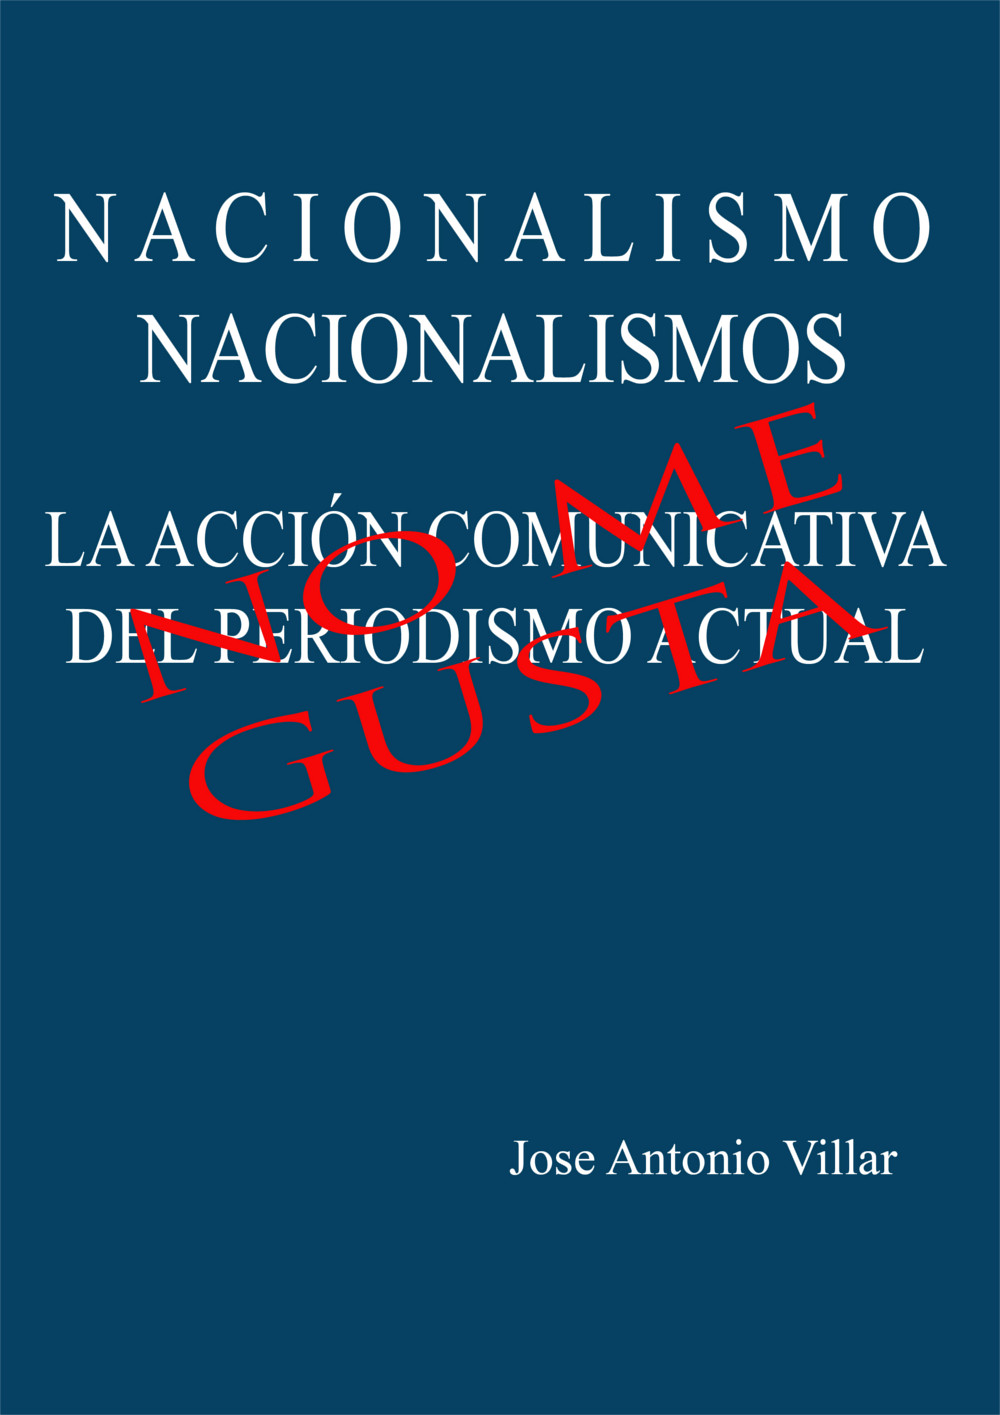 Nacionalismos_Accion-comunicativa_JA Villar.jpg